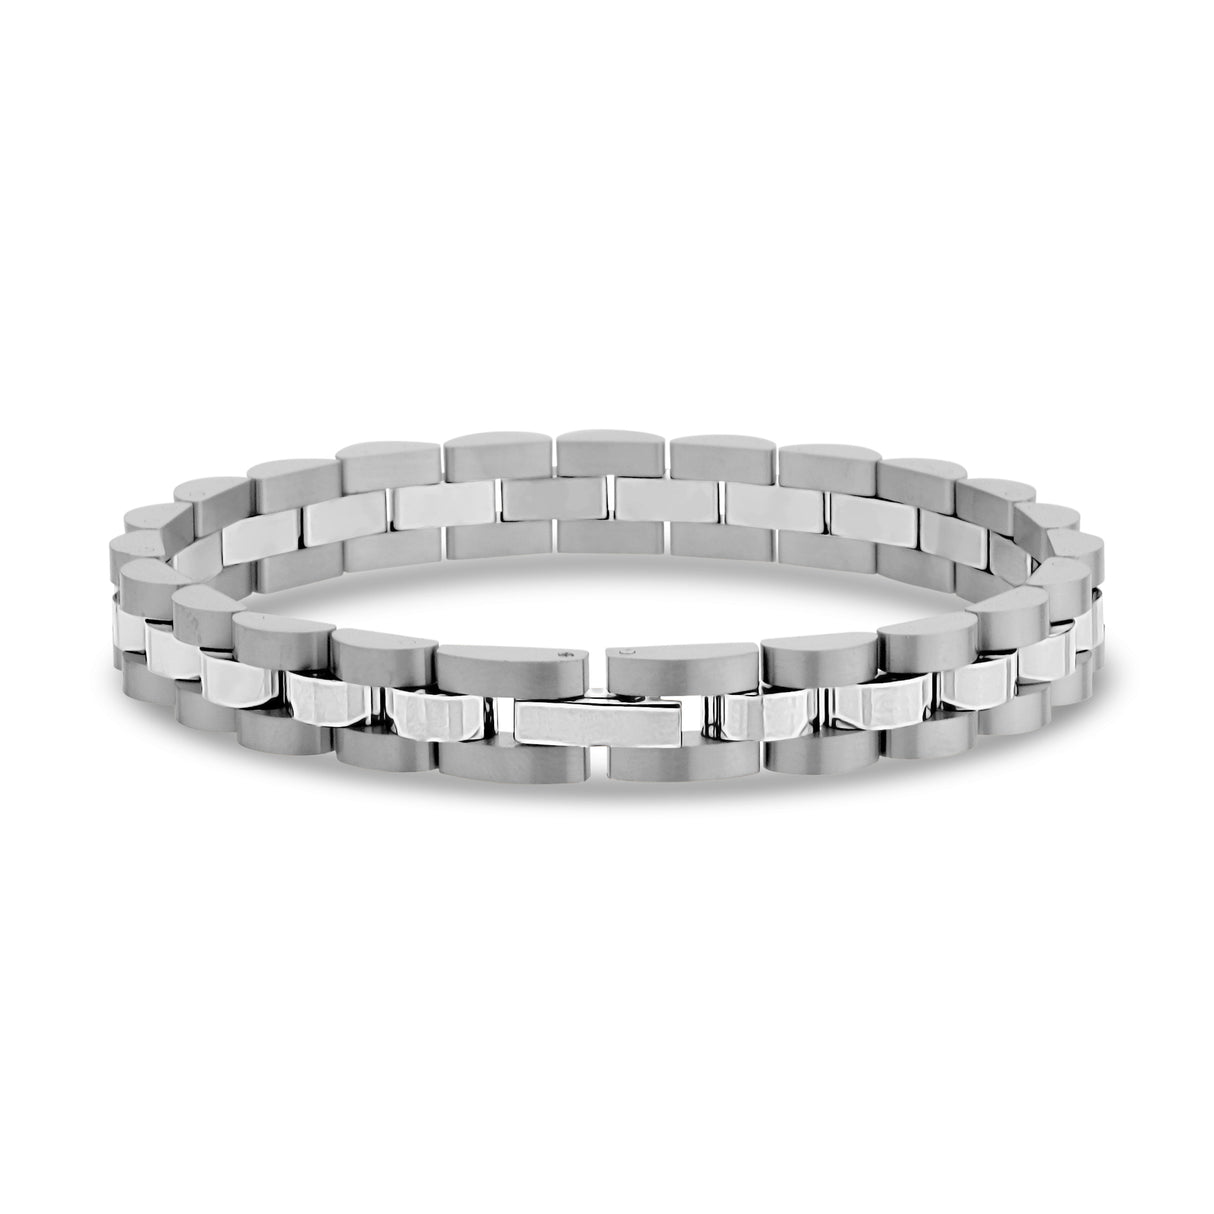 8mm stainless steel watch link bracelet